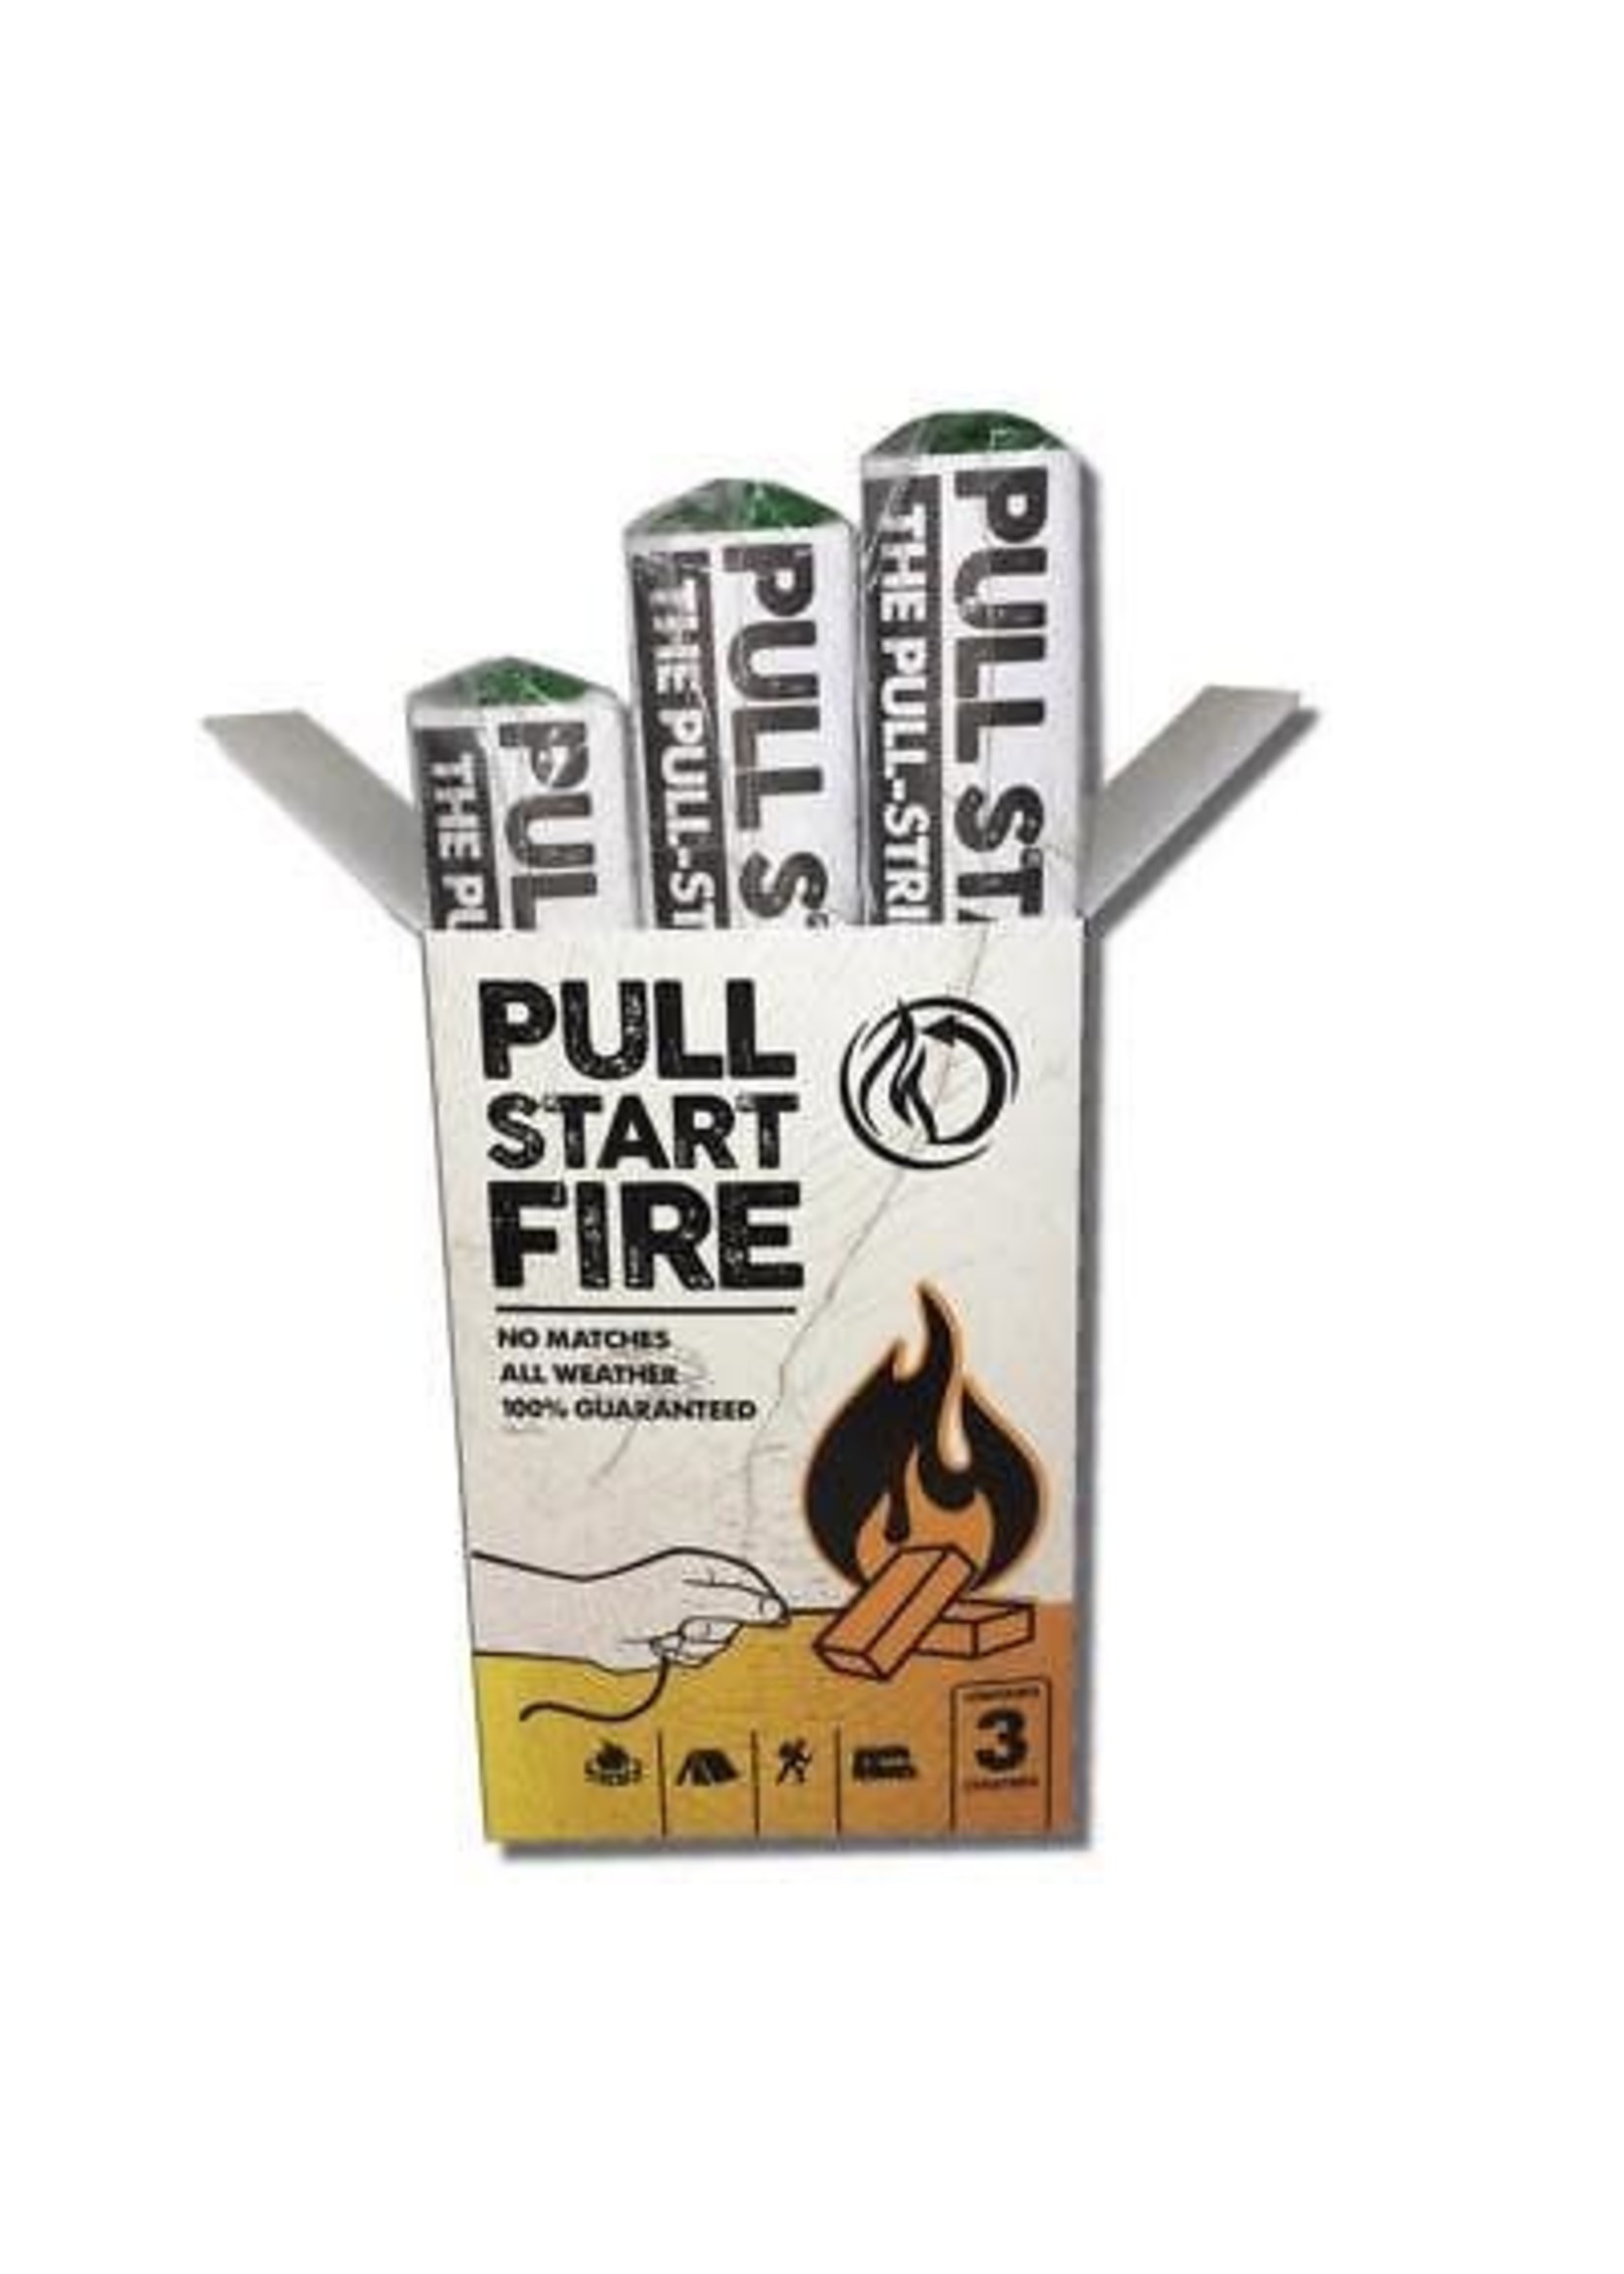 PULL START FIRE FIRE STARTER